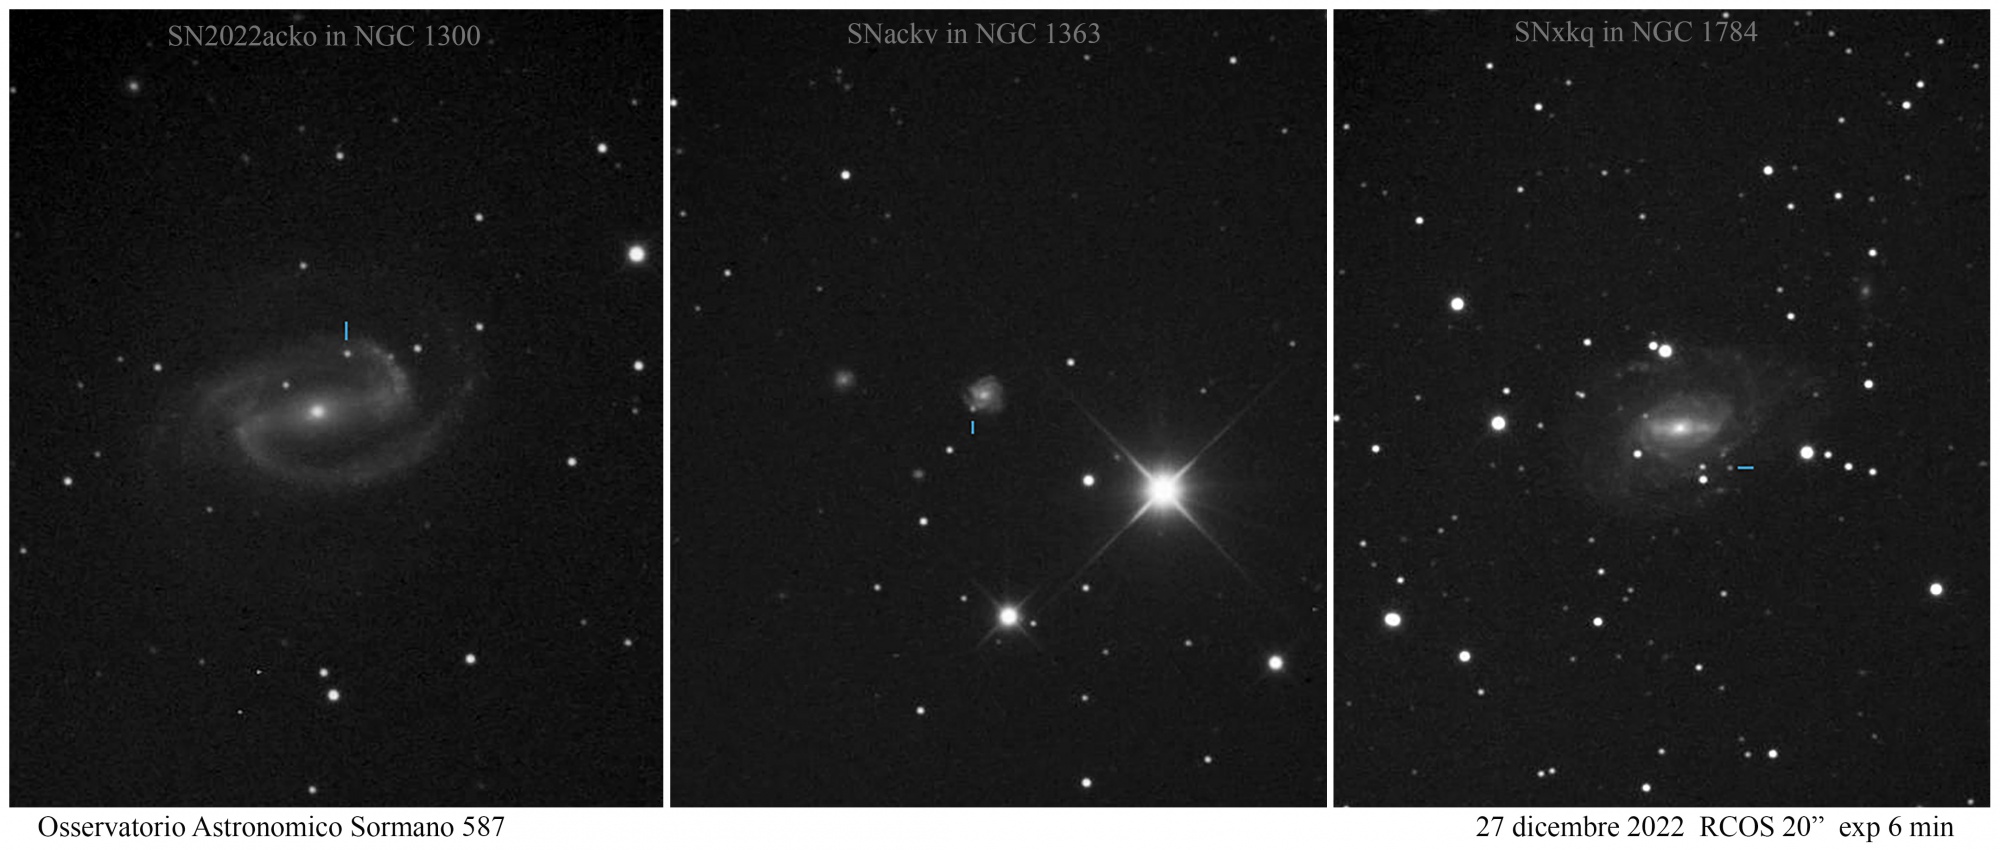 Tre supernove in tre galassie a spirale barrate